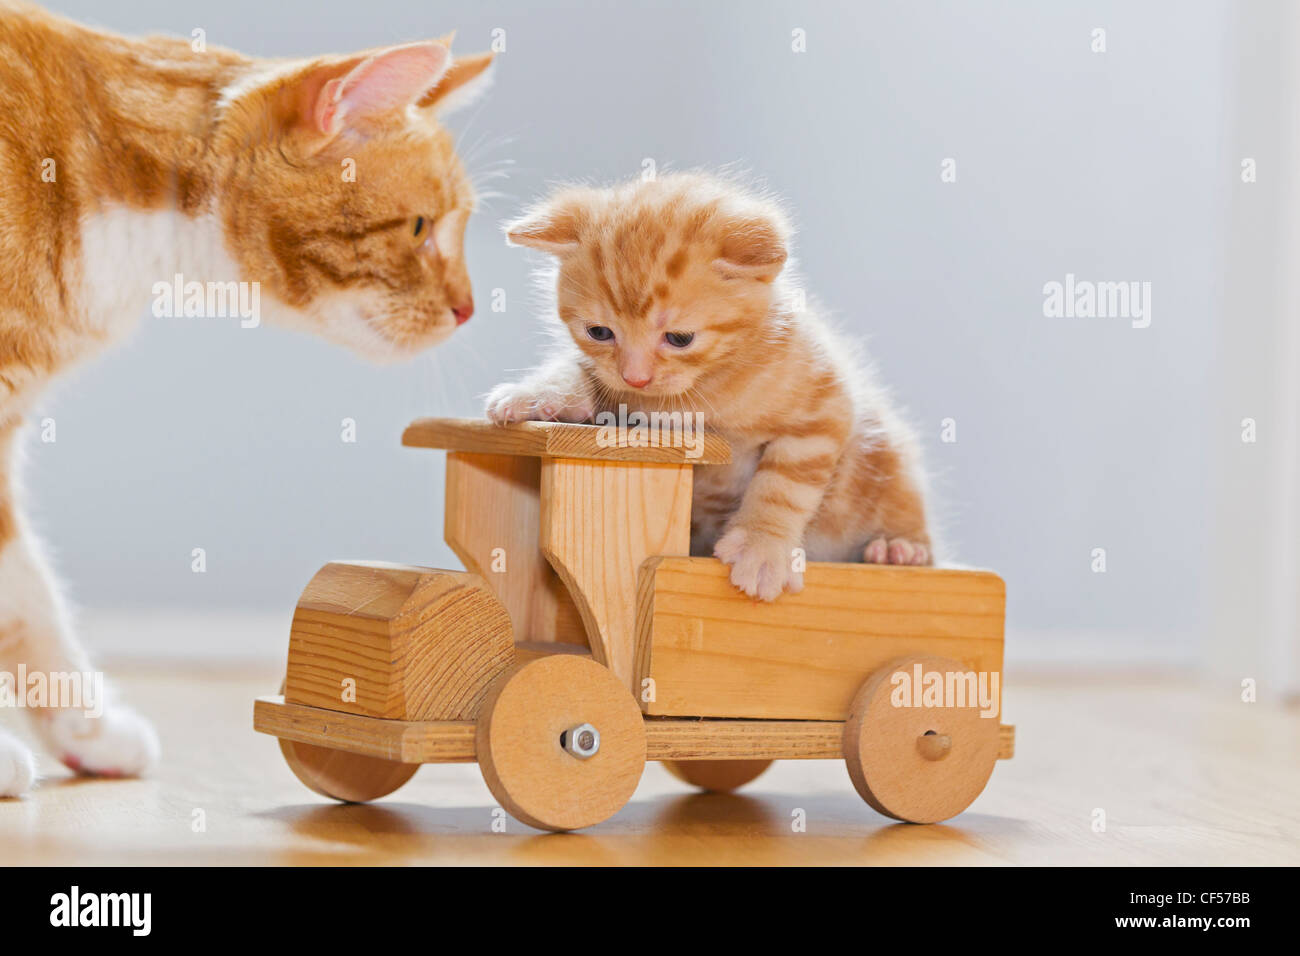 Germania, Cat guardando gattino seduto sul giocattolo di legno Foto Stock